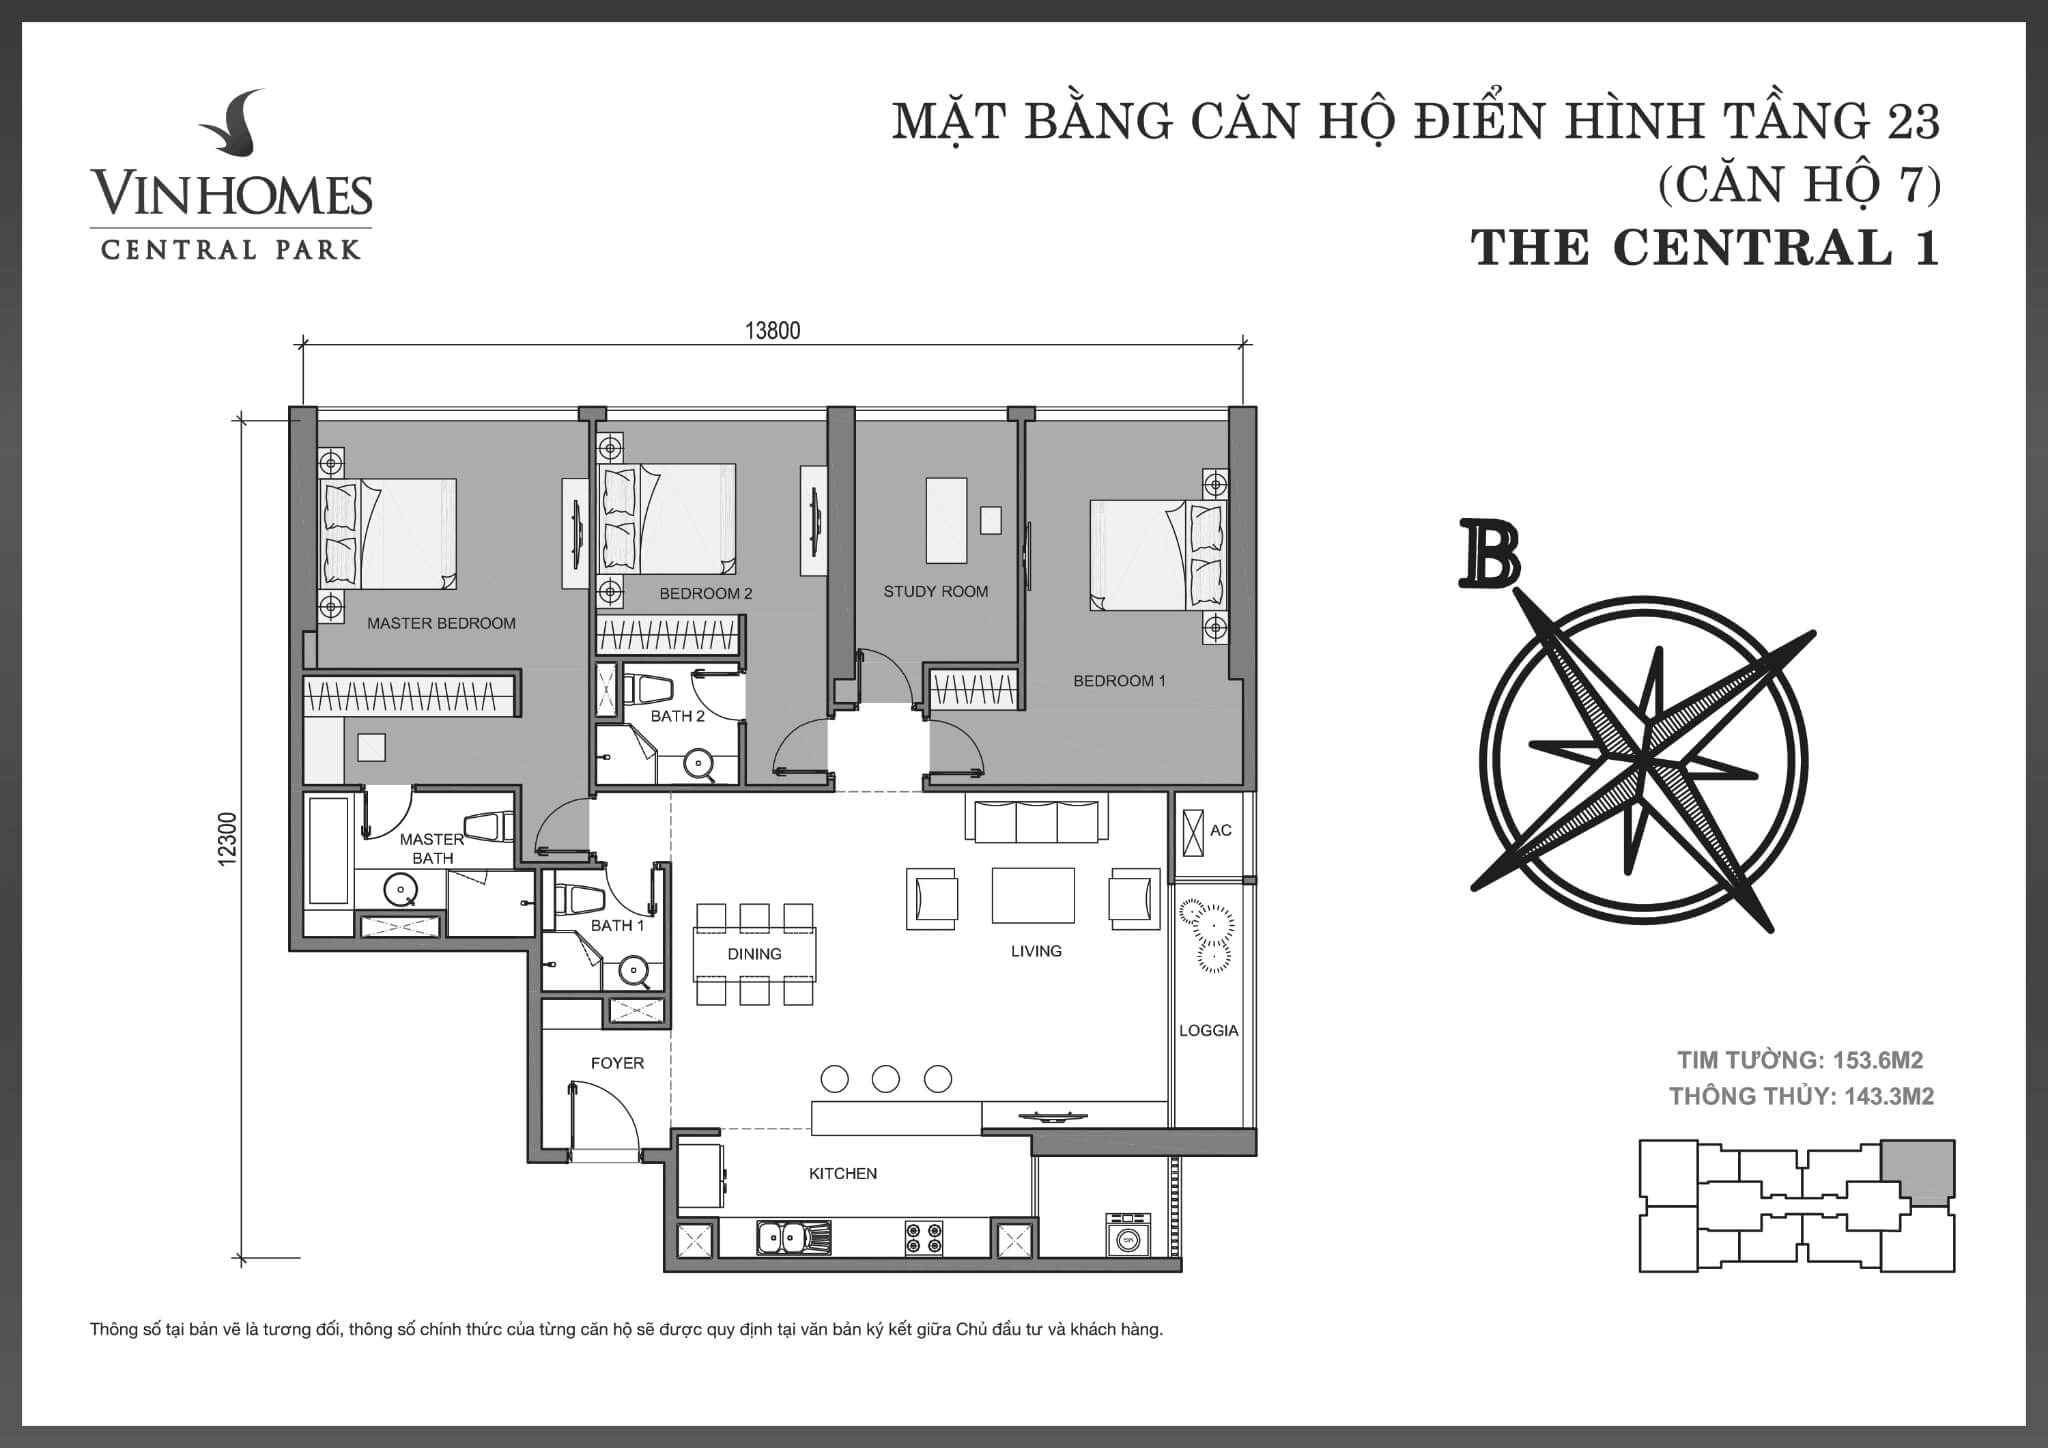 layout căn hộ số 7 tầng 23 Central 1